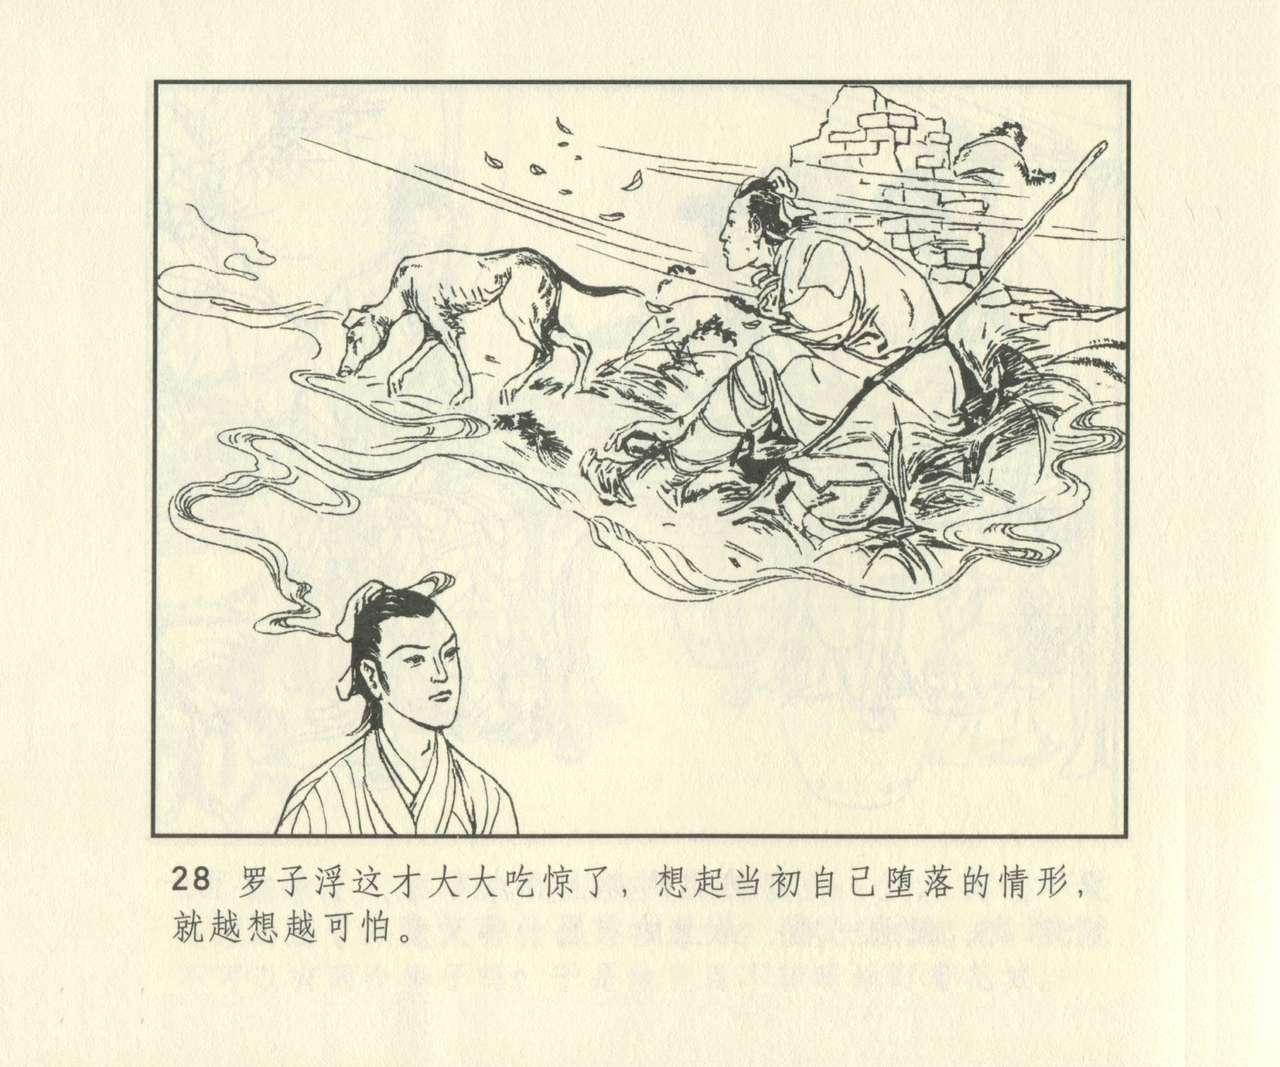 聊斋志异 张玮等绘 天津人民美术出版社 卷二十一 ~ 三十 644